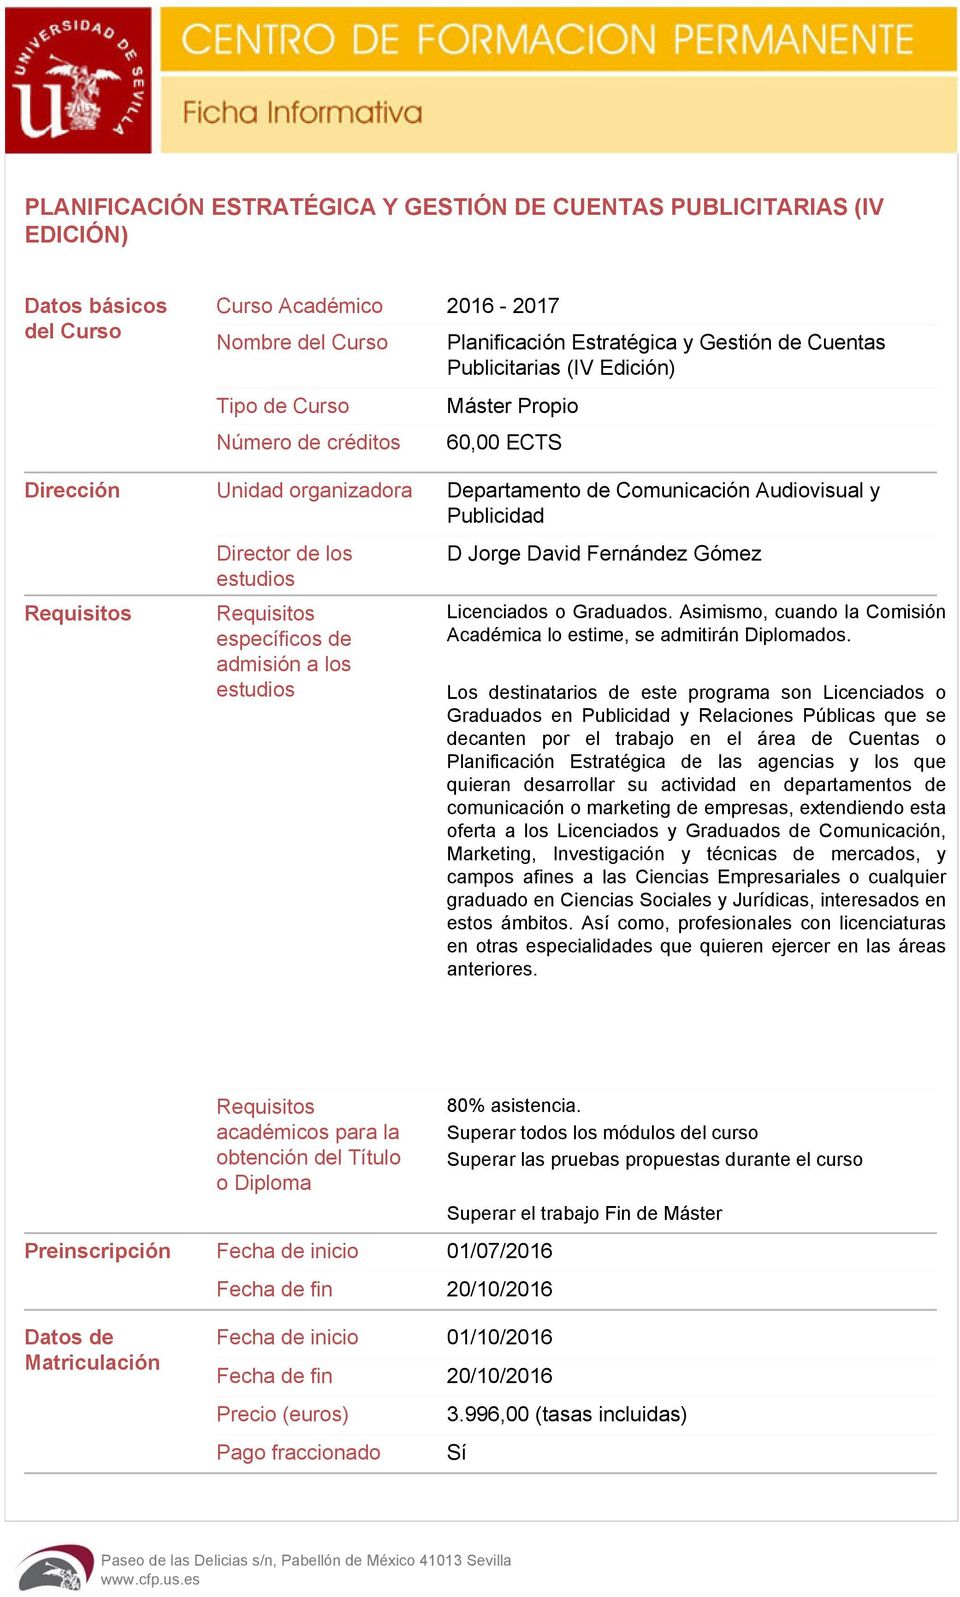 Requisitos específicos de admisión a los estudios D Jorge David Fernández Gómez Licenciados o Graduados. Asimismo, cuando la Comisión Académica lo estime, se admitirán Diplomados.